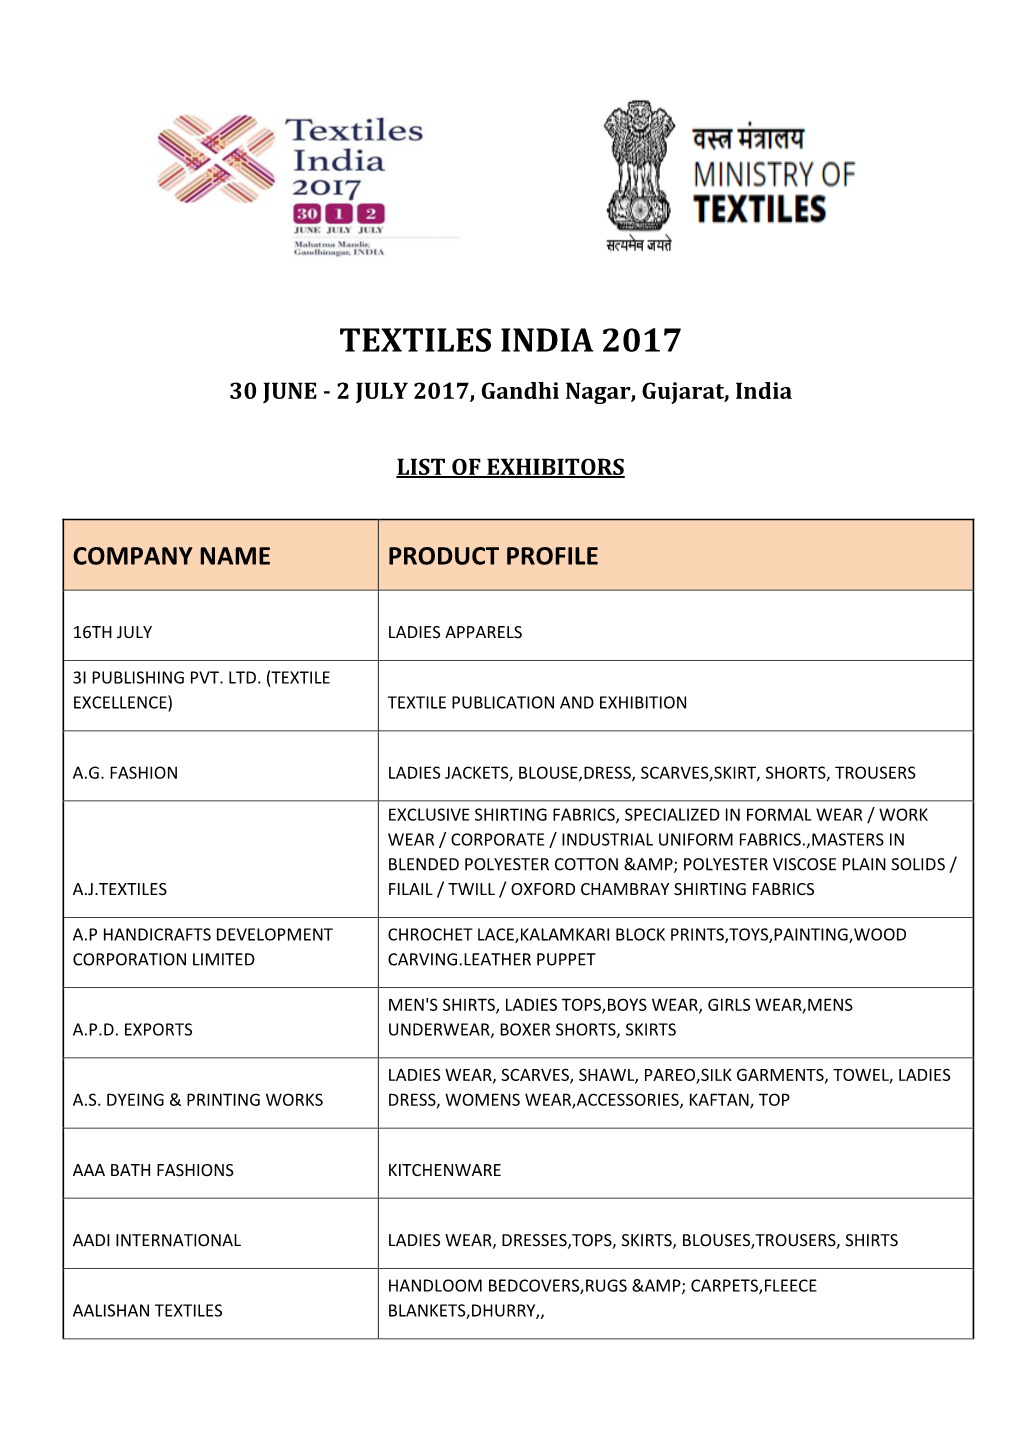 Company Name Product Profile